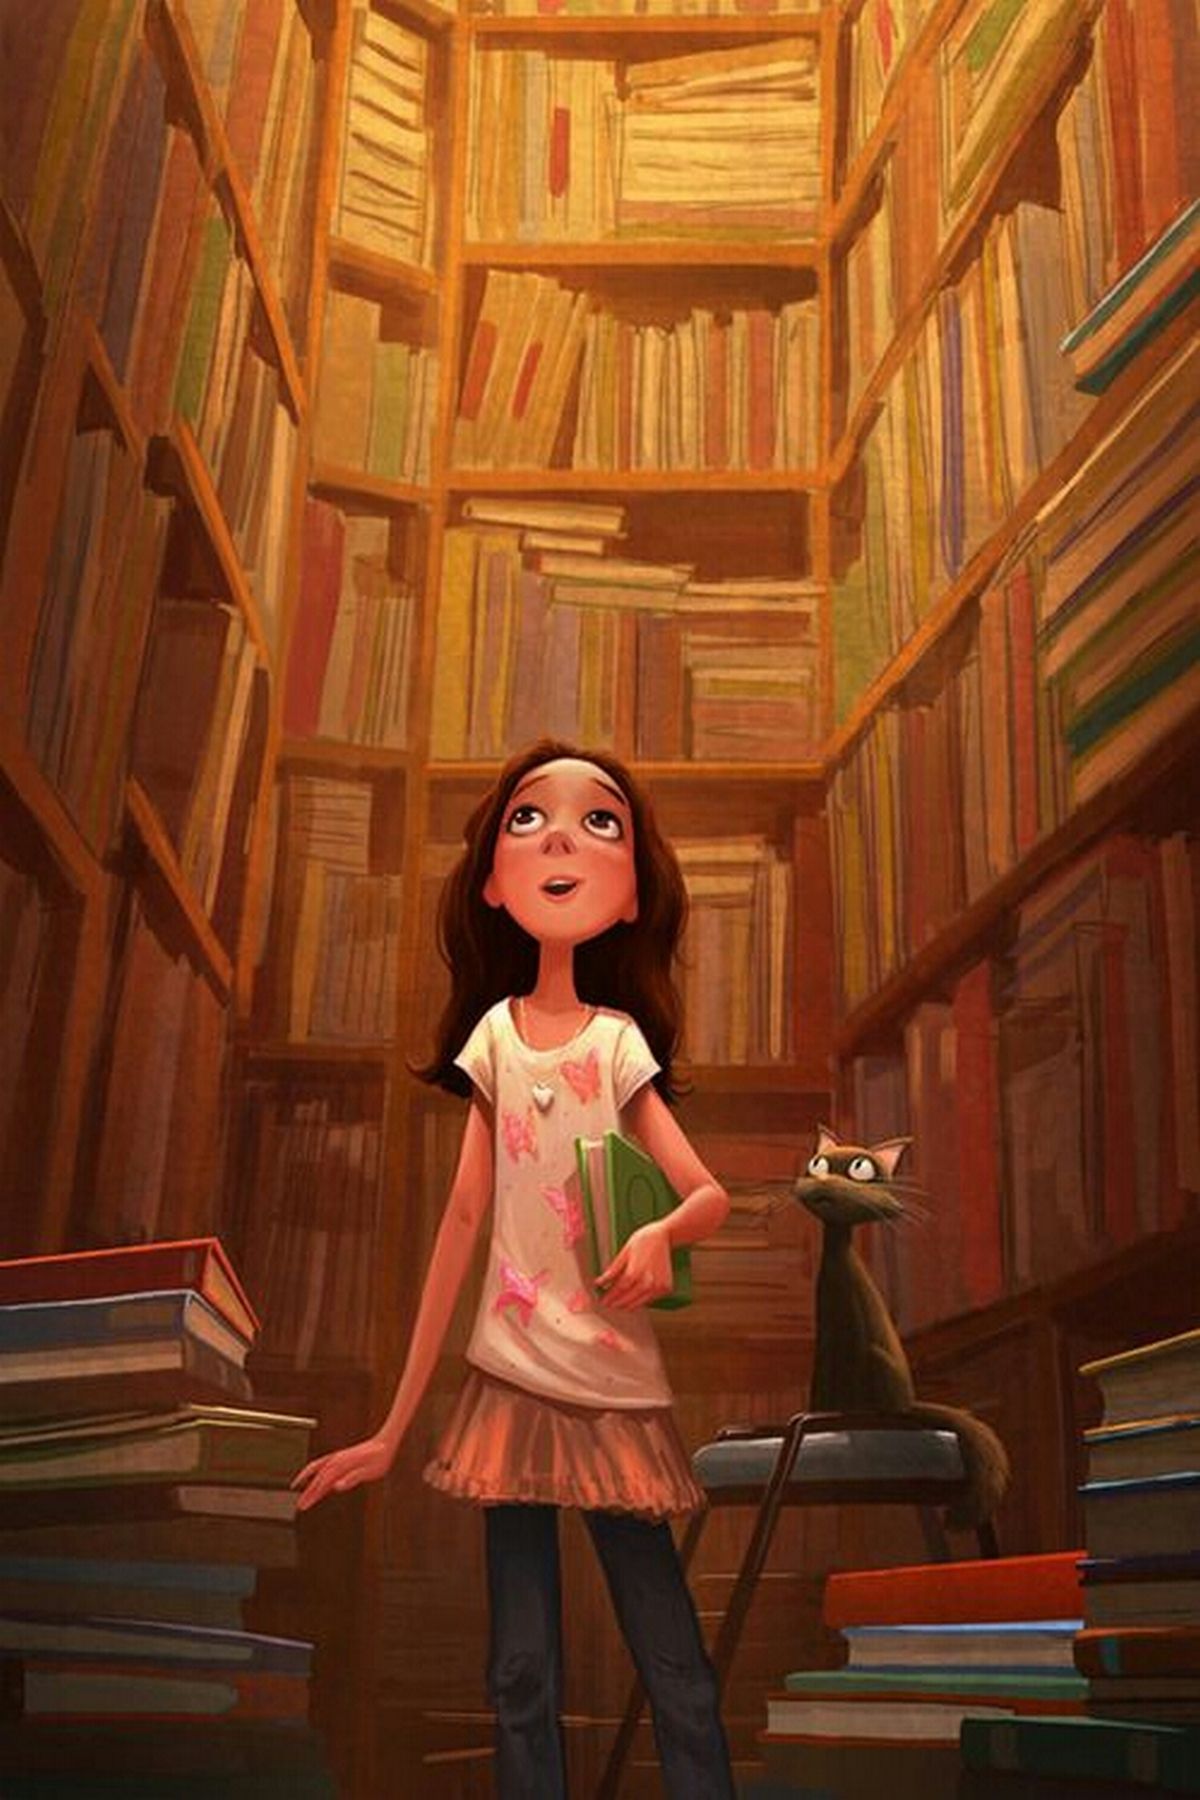 Читать книги ru book. Иллюстрации к книгам. Чтение книг. Аватарка для библиотеки. Персонажи в библиотеке.